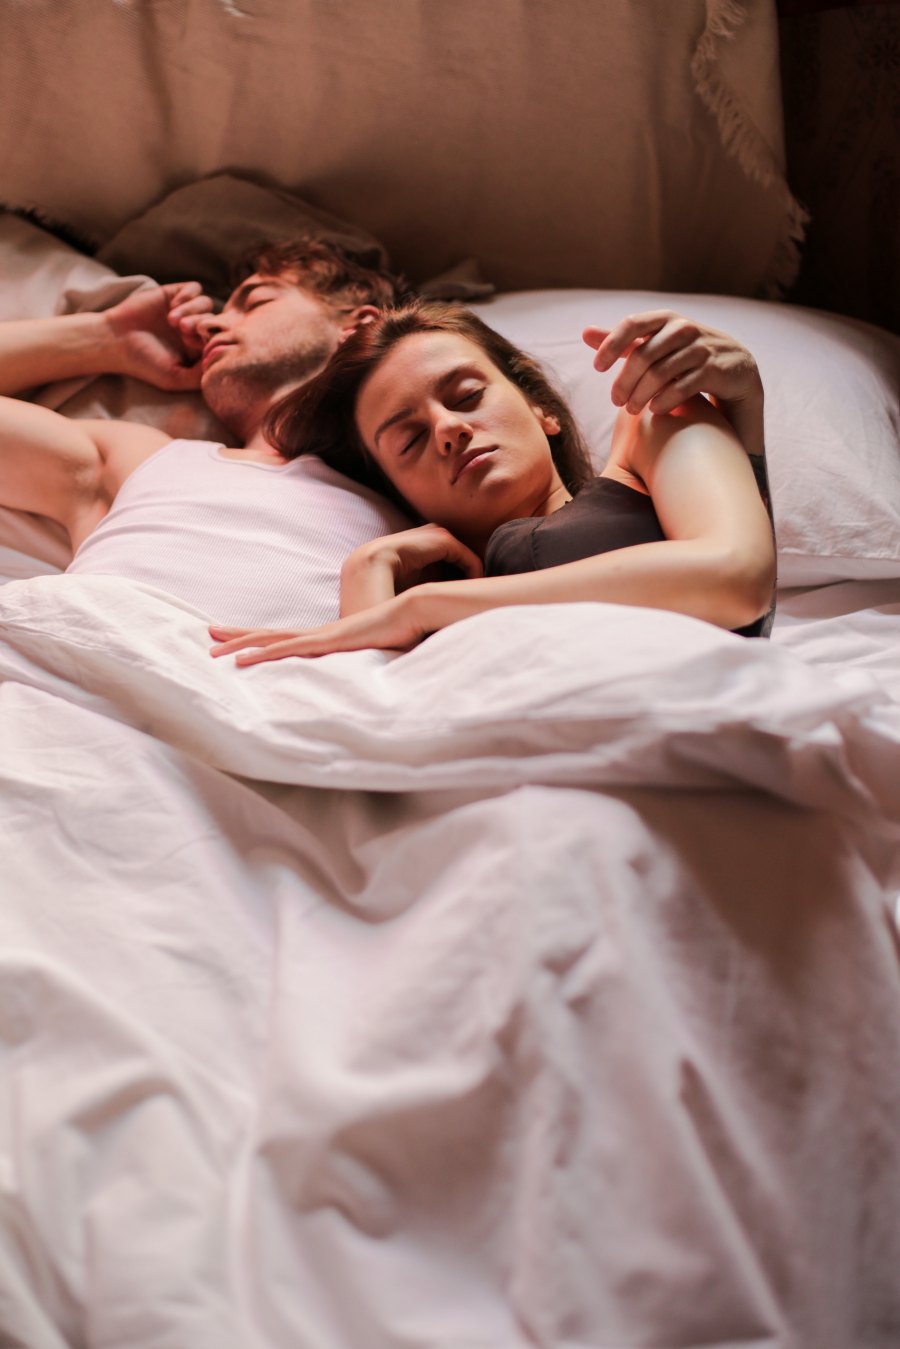 Τι είναι το διαζύγιο ύπνου και πώς μπορεί να ωφελήσει τη σχέση αλλά και την υγεία σου